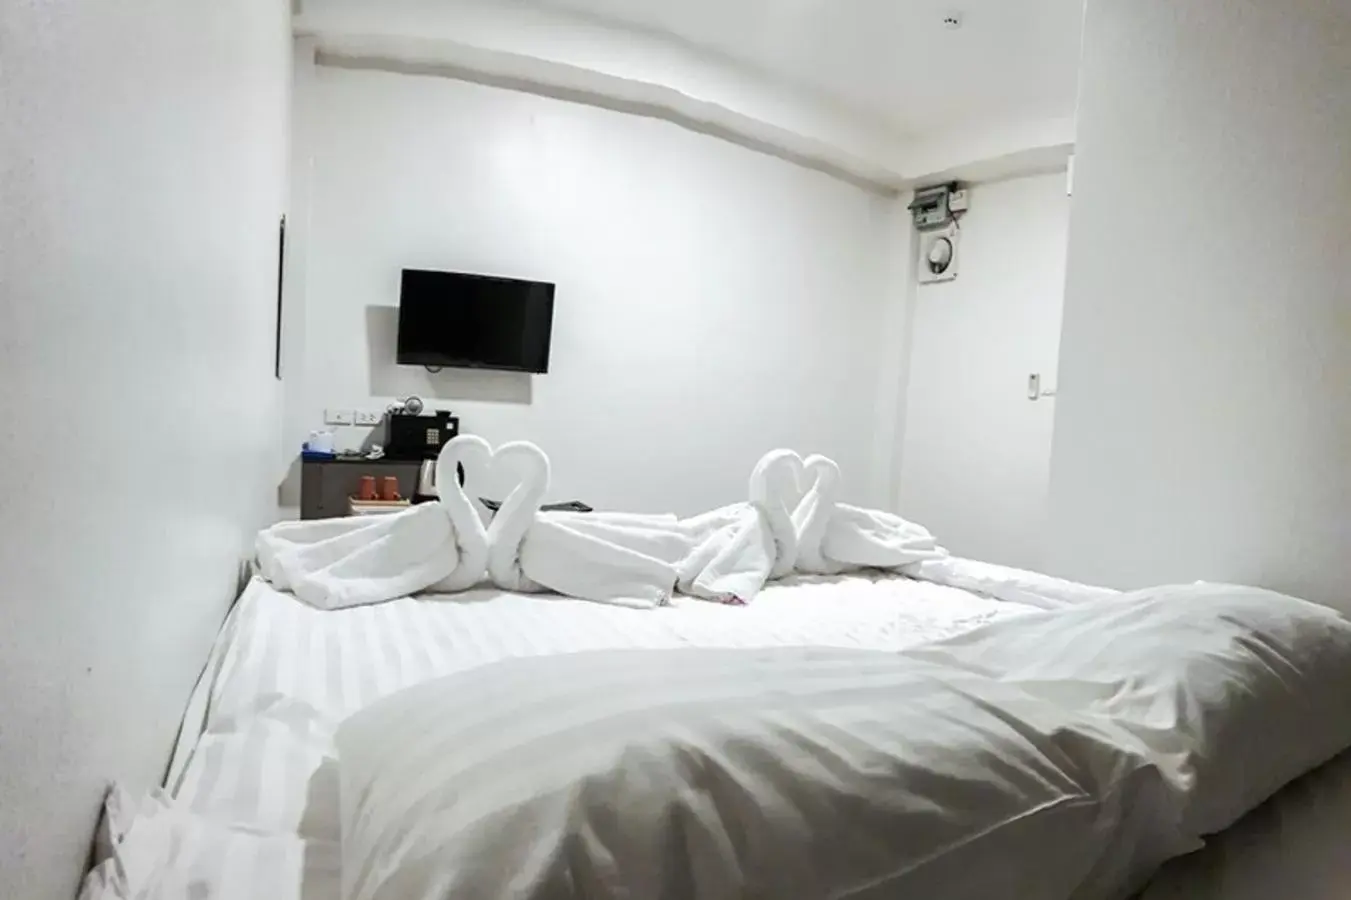 Bed in Kim Korner Hotel